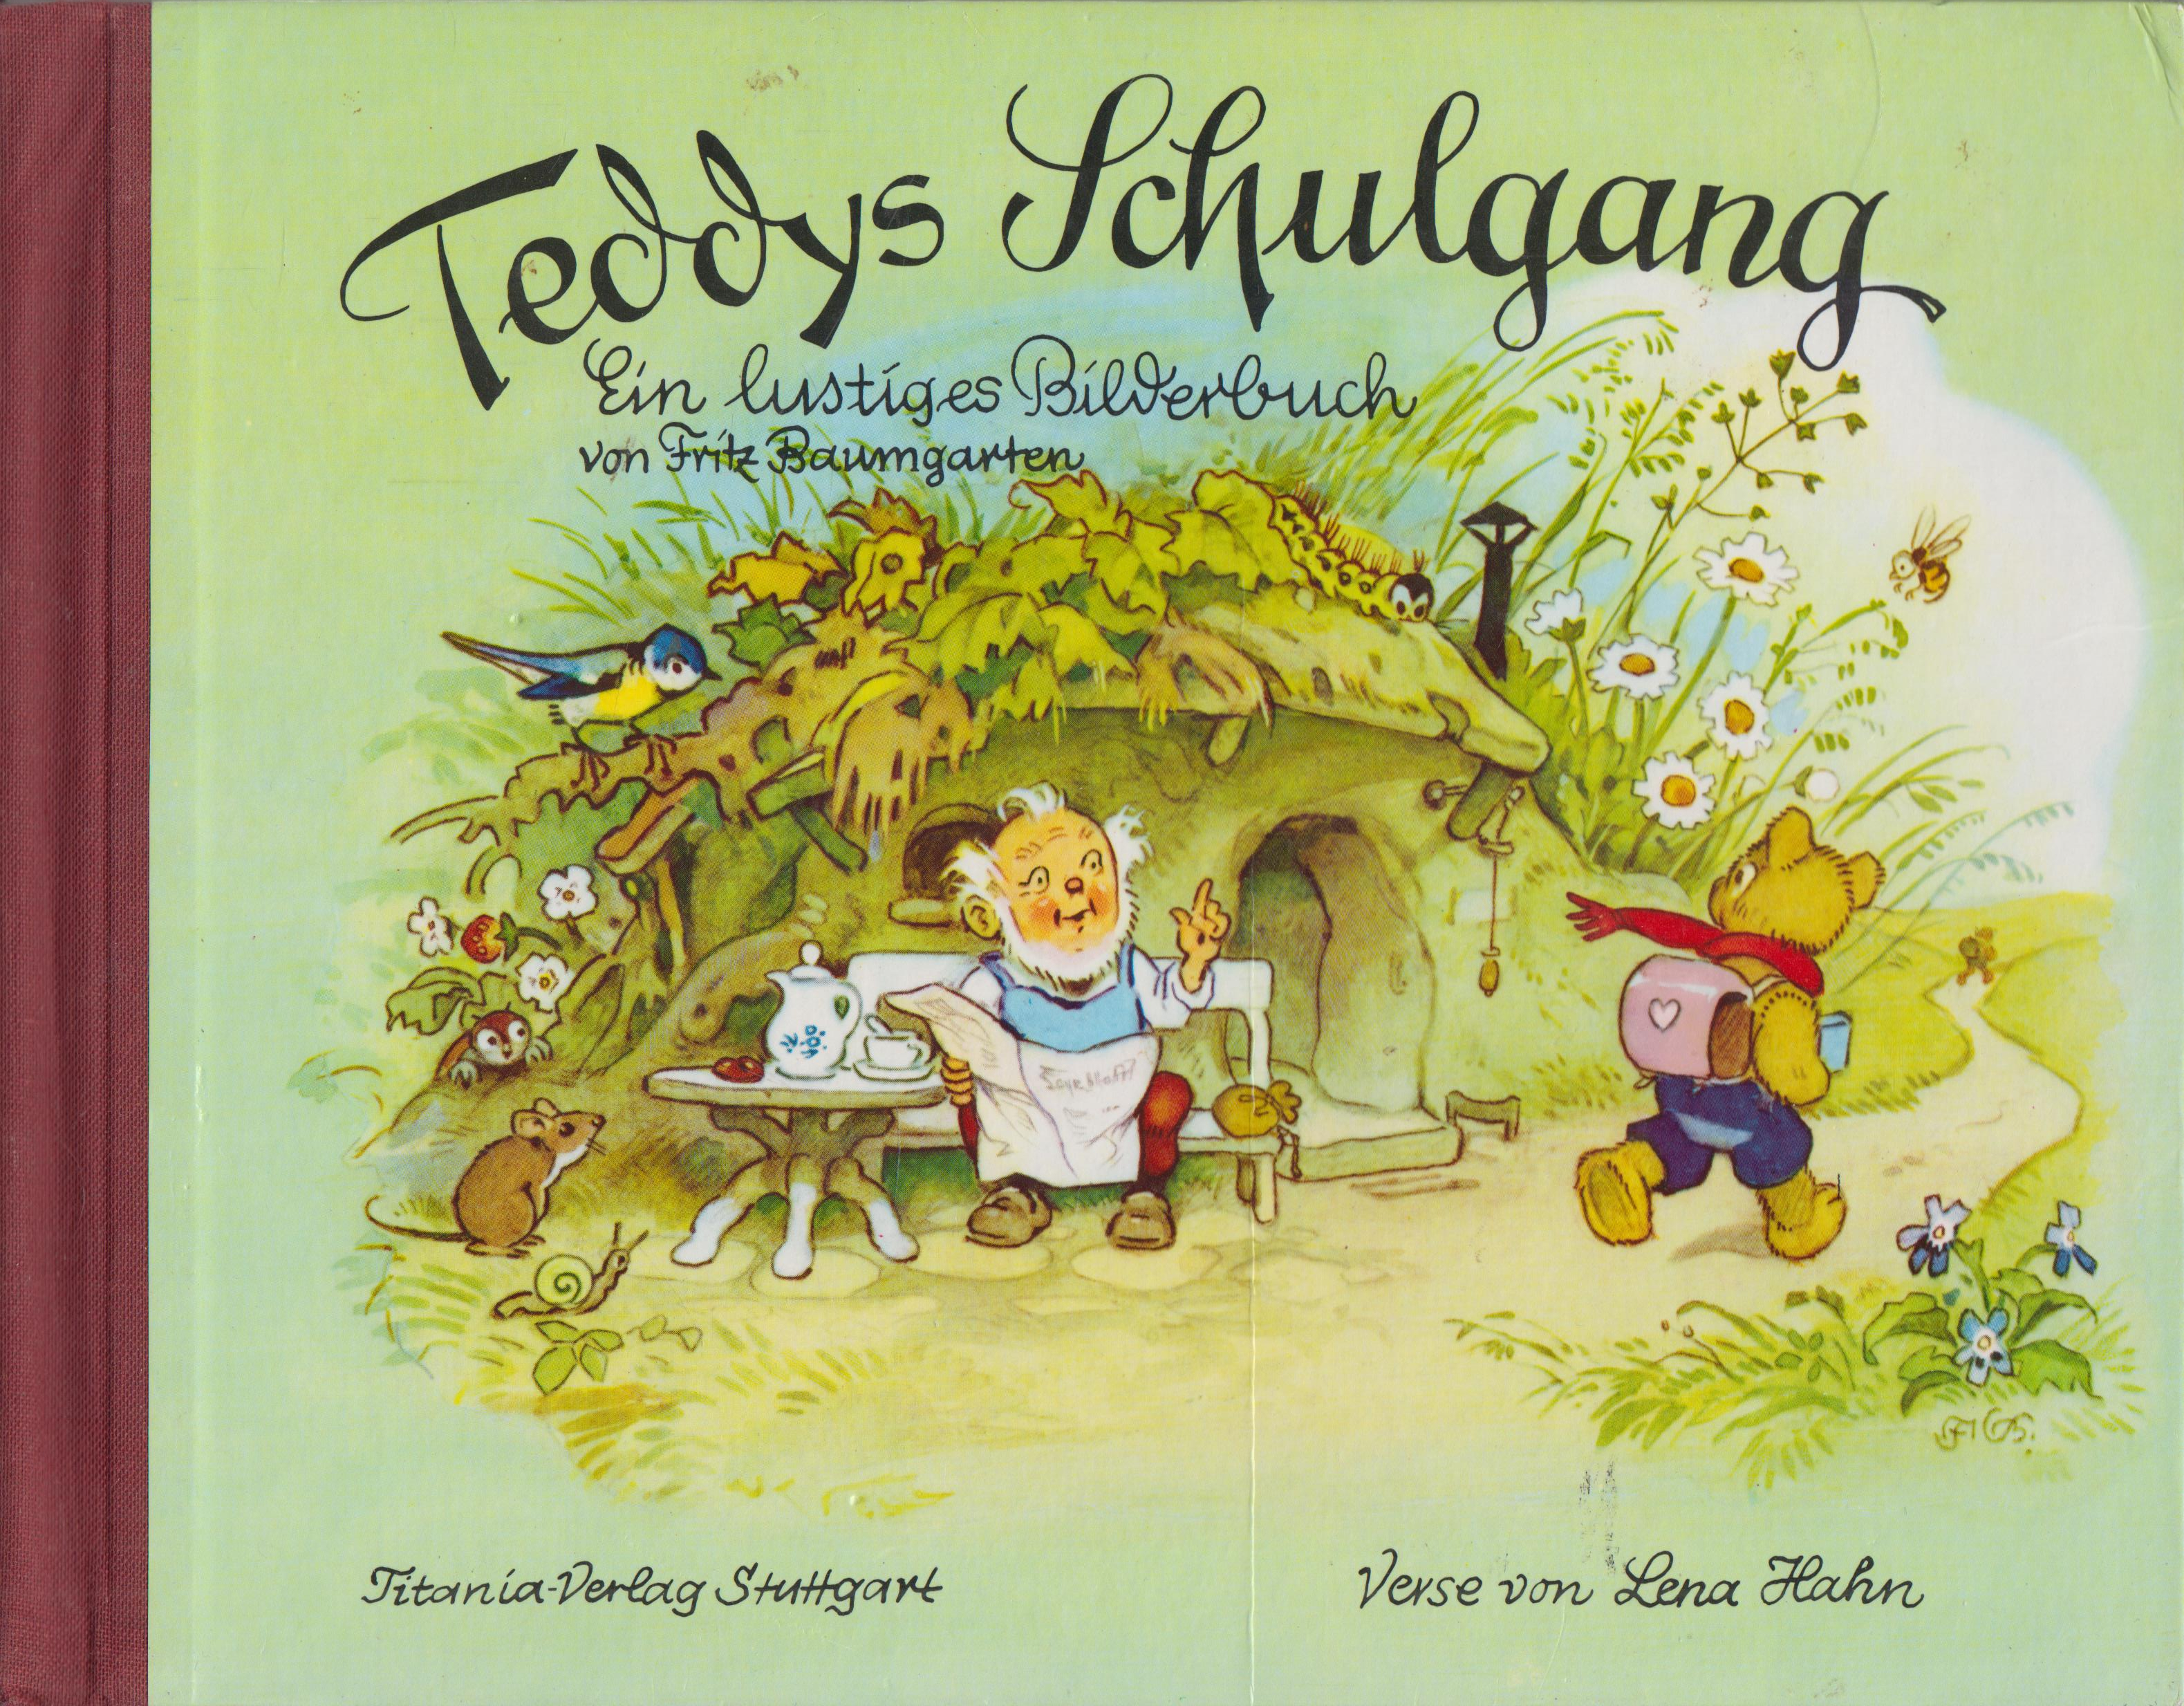 Teddys Schulgang Ein lustiges Bilderbuch von Fritz Baumgarten - Hahn, Lena